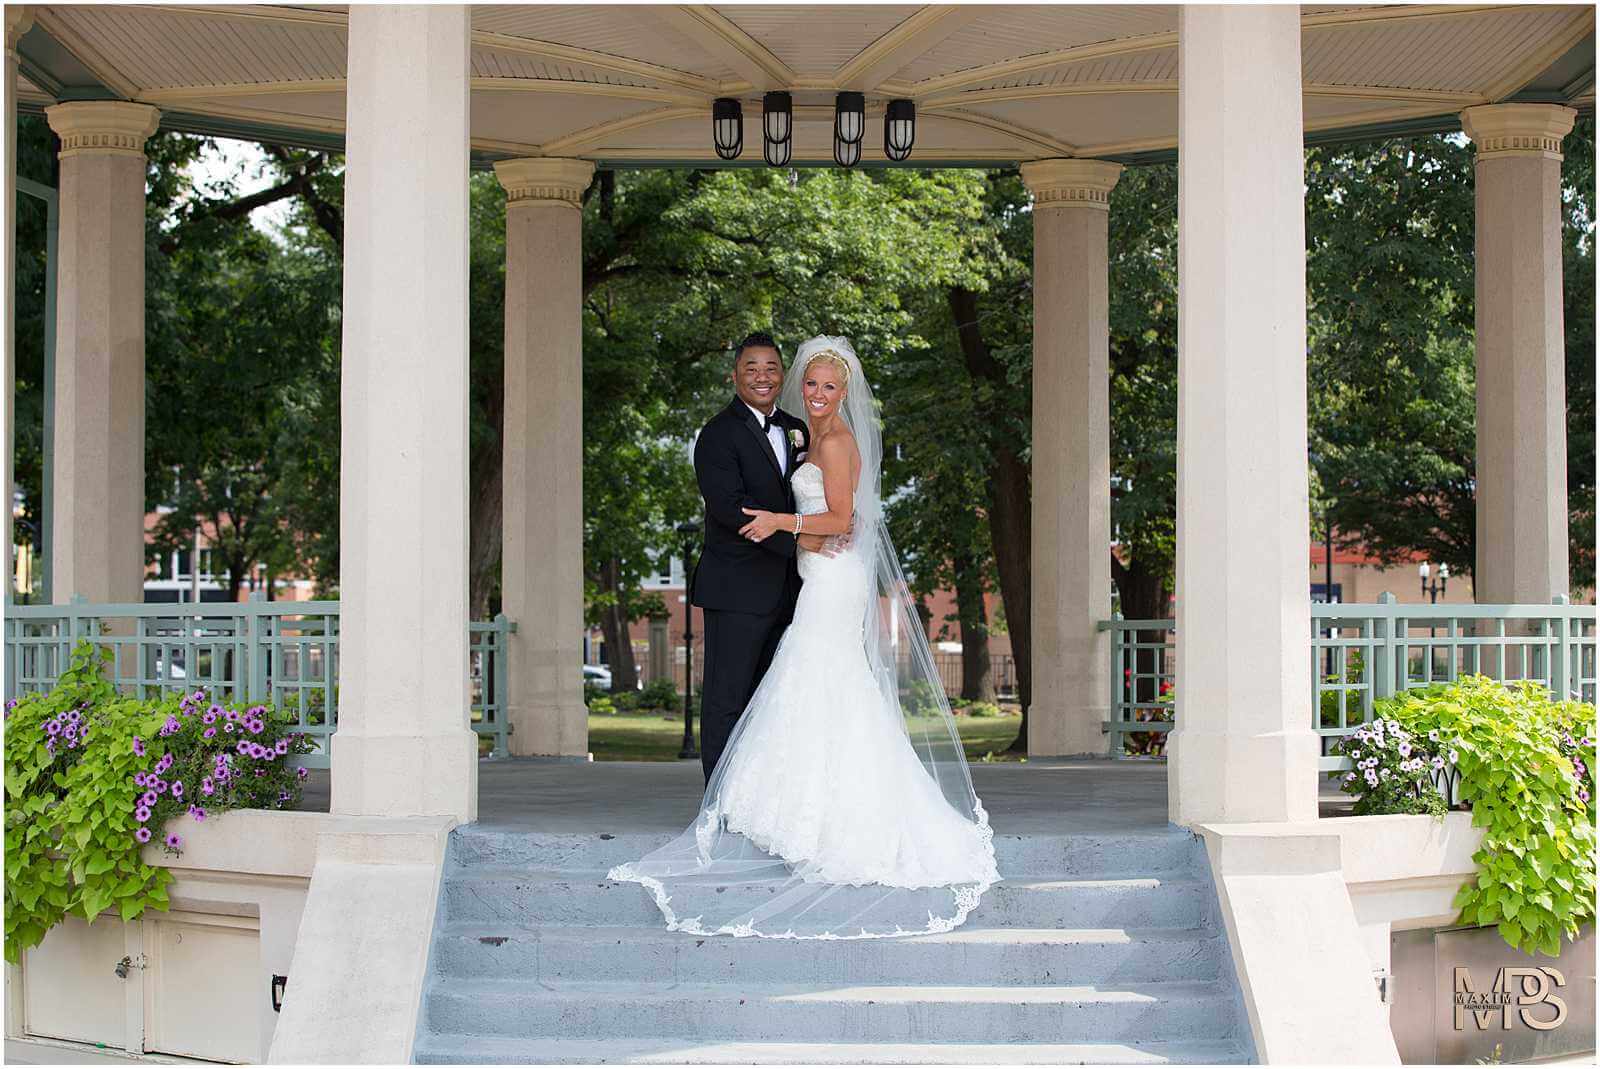 Cincinnati Music Hall wedding groom bride portraits